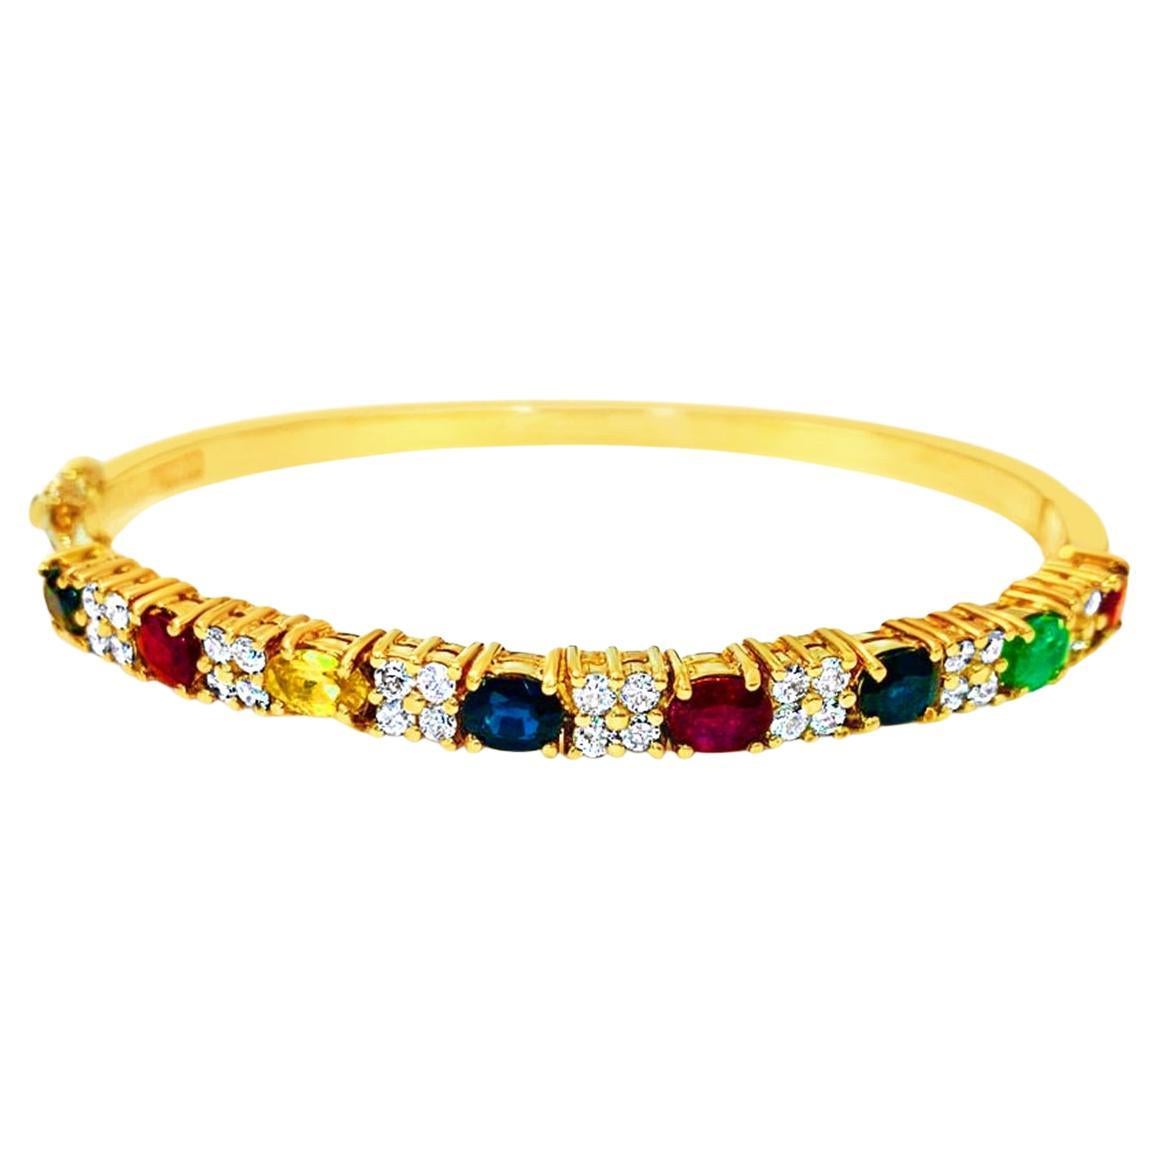 Precious Multi Gemstone & Diamond Bracelet in 18k gold